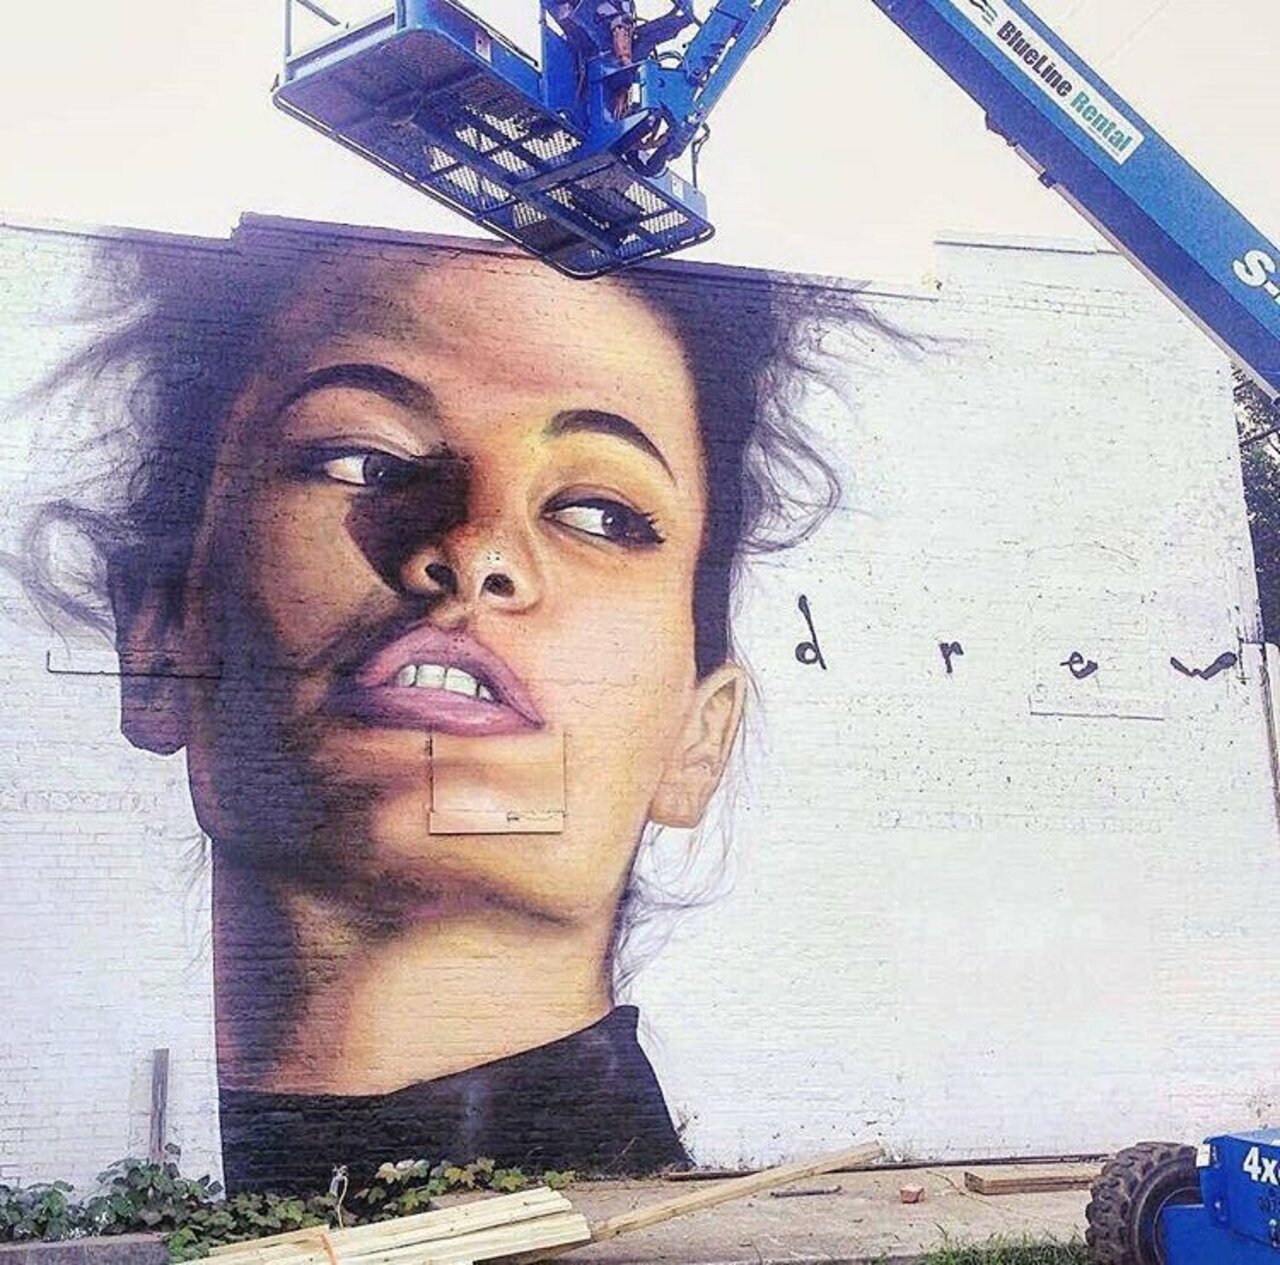 #mural by Drew Merrit #Atlanta #USA #art #graffiti #streetart #urbanart https://t.co/pSDjVTmyLG